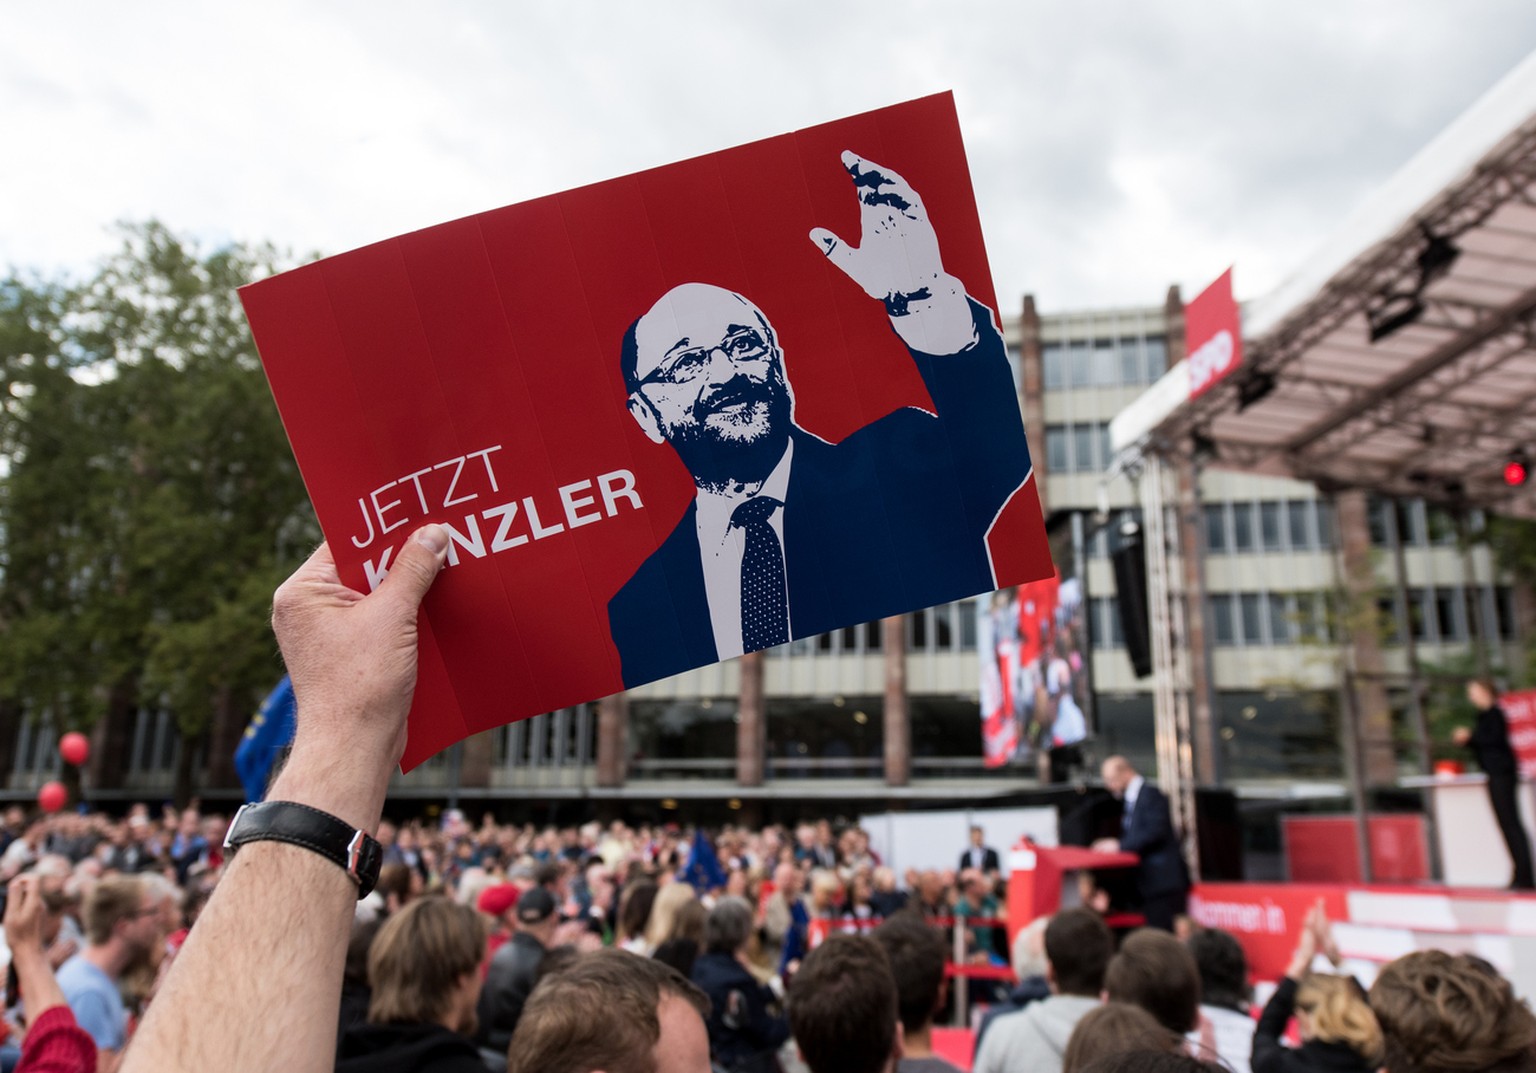 Der Spitzenkandidat der SPD zur Bundestagswahl, Martin Schulz, spricht am 16.09.2017 in Freiburg (Baden-Württemberg) bei einem Wahlkampfauftritt auf dem Platz der Alten Synagoge. Im Vordergrund ein SP ...